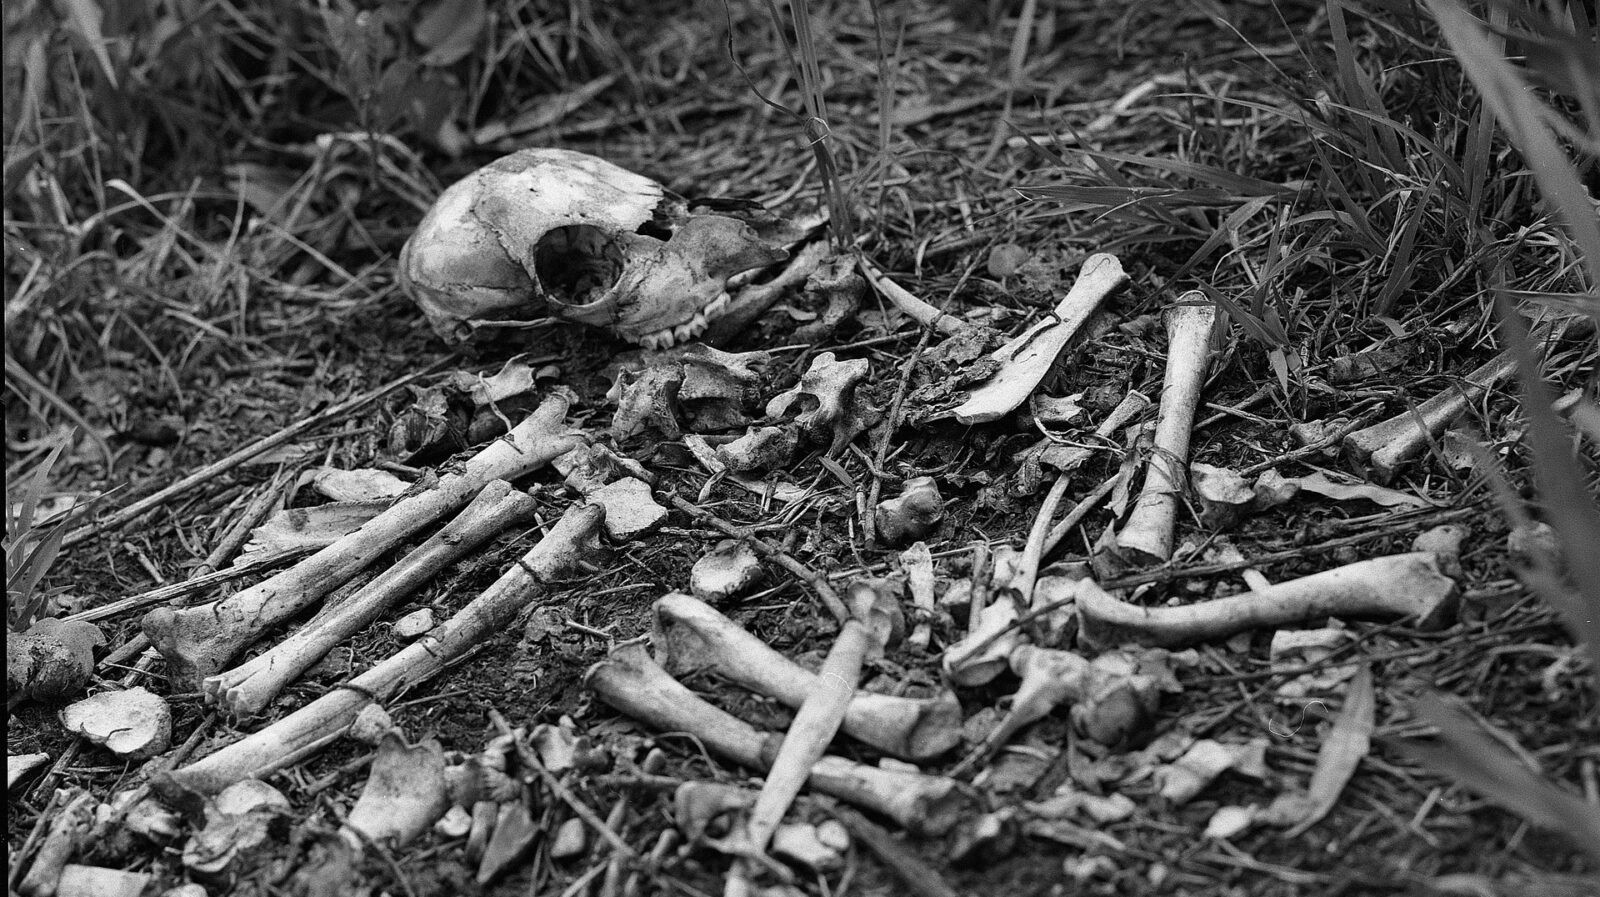 W ekwadorskiej prowincji Manabi odkryto szkielet człowieka sprzed kilkuset lat. Wydawało się, że należał do zaginionego członka plemienia gigantów
